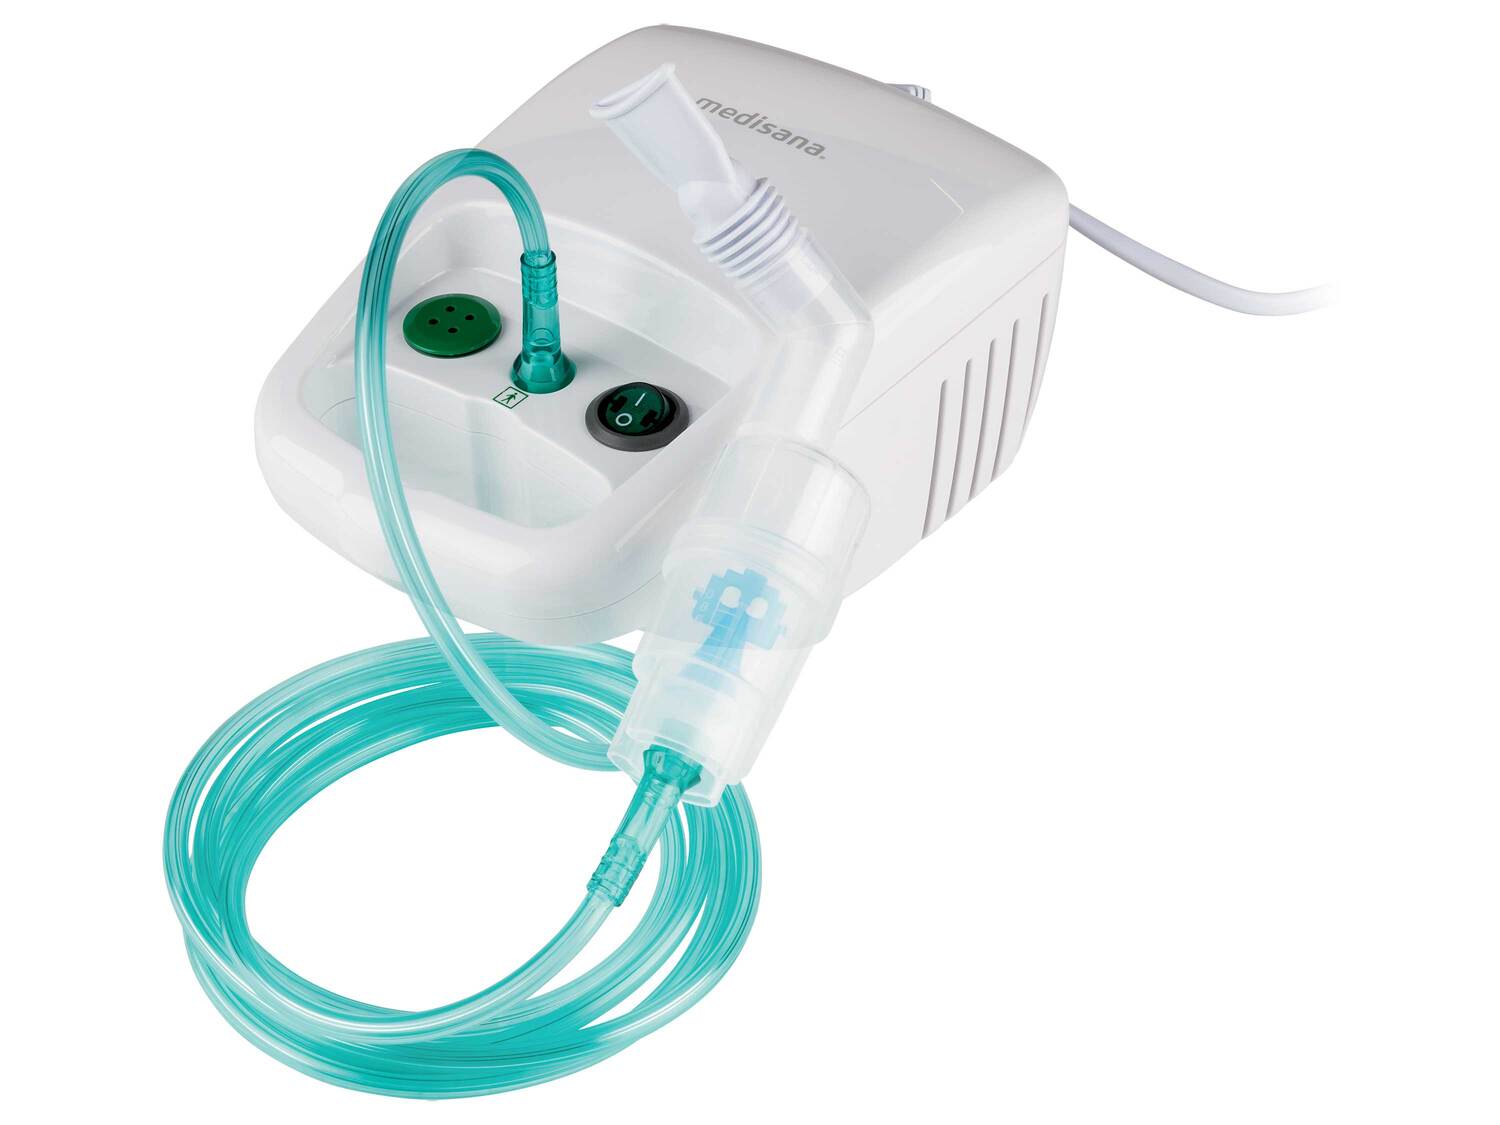 Inhalateur Medisana, le prix 24.99 € 
- Pour le traitement ciblé des maladies ...